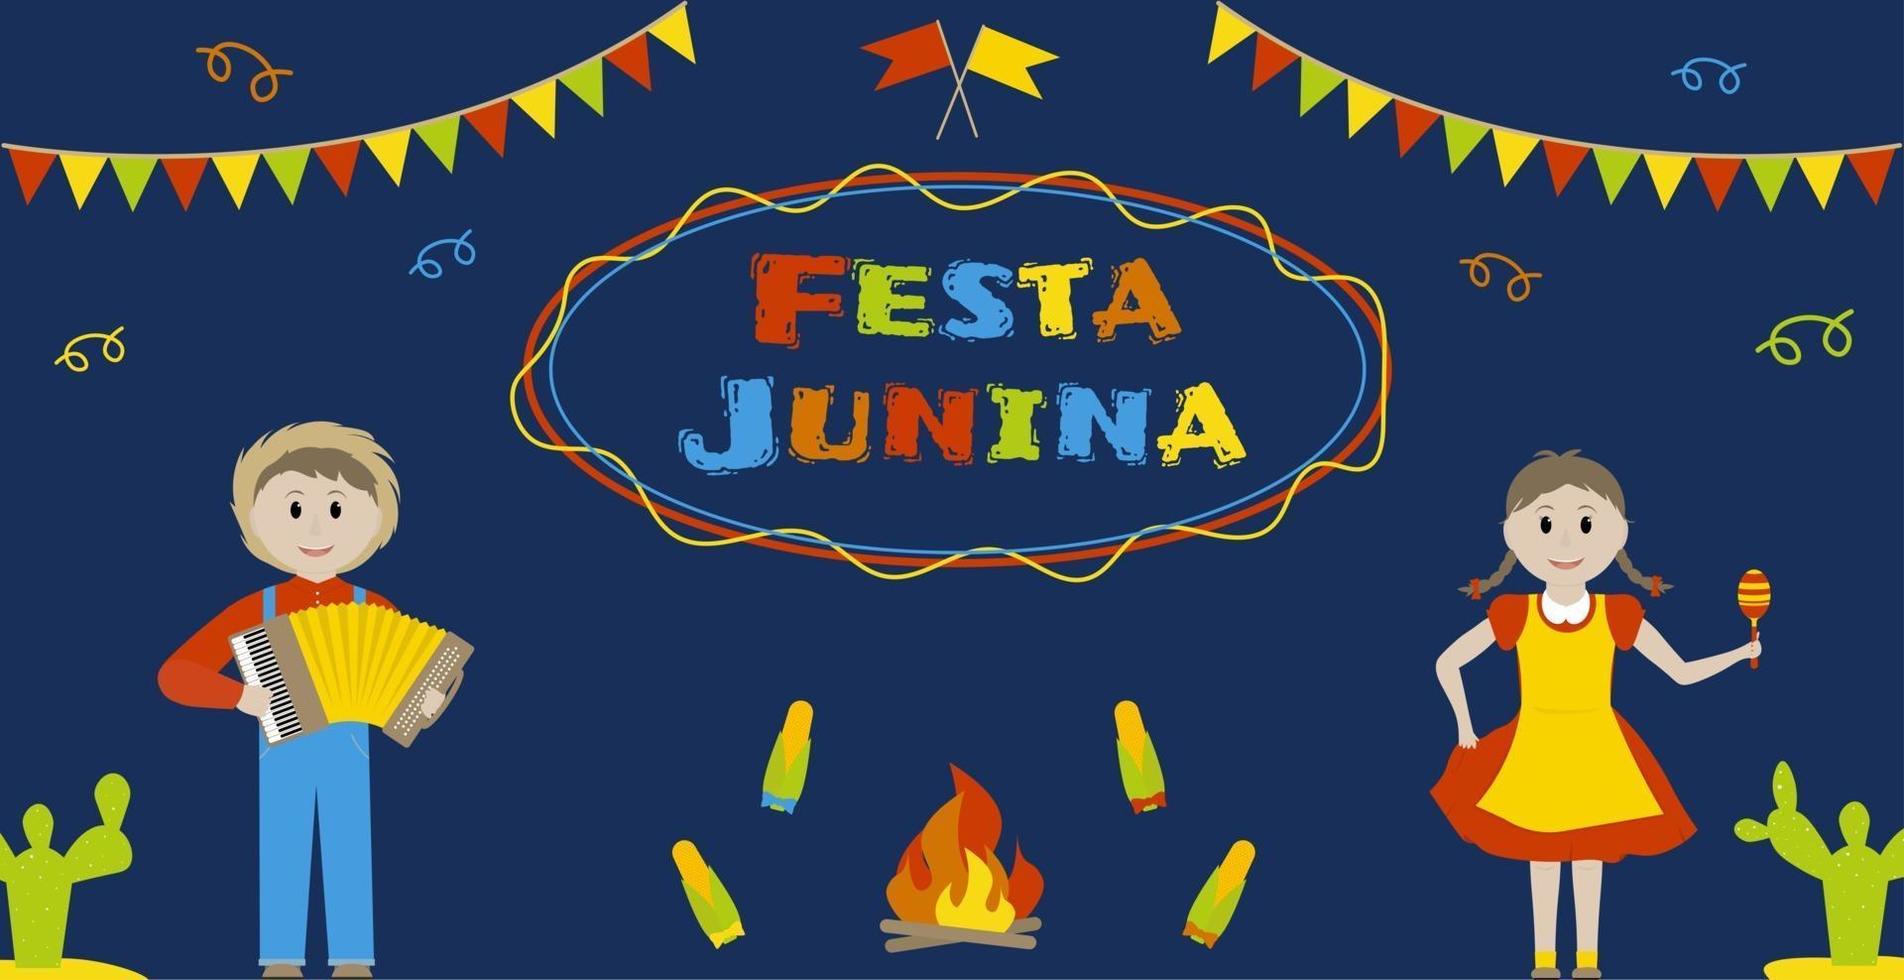 festa junina juni braziliaanse festival wenskaart perfect voor posters of banners vector